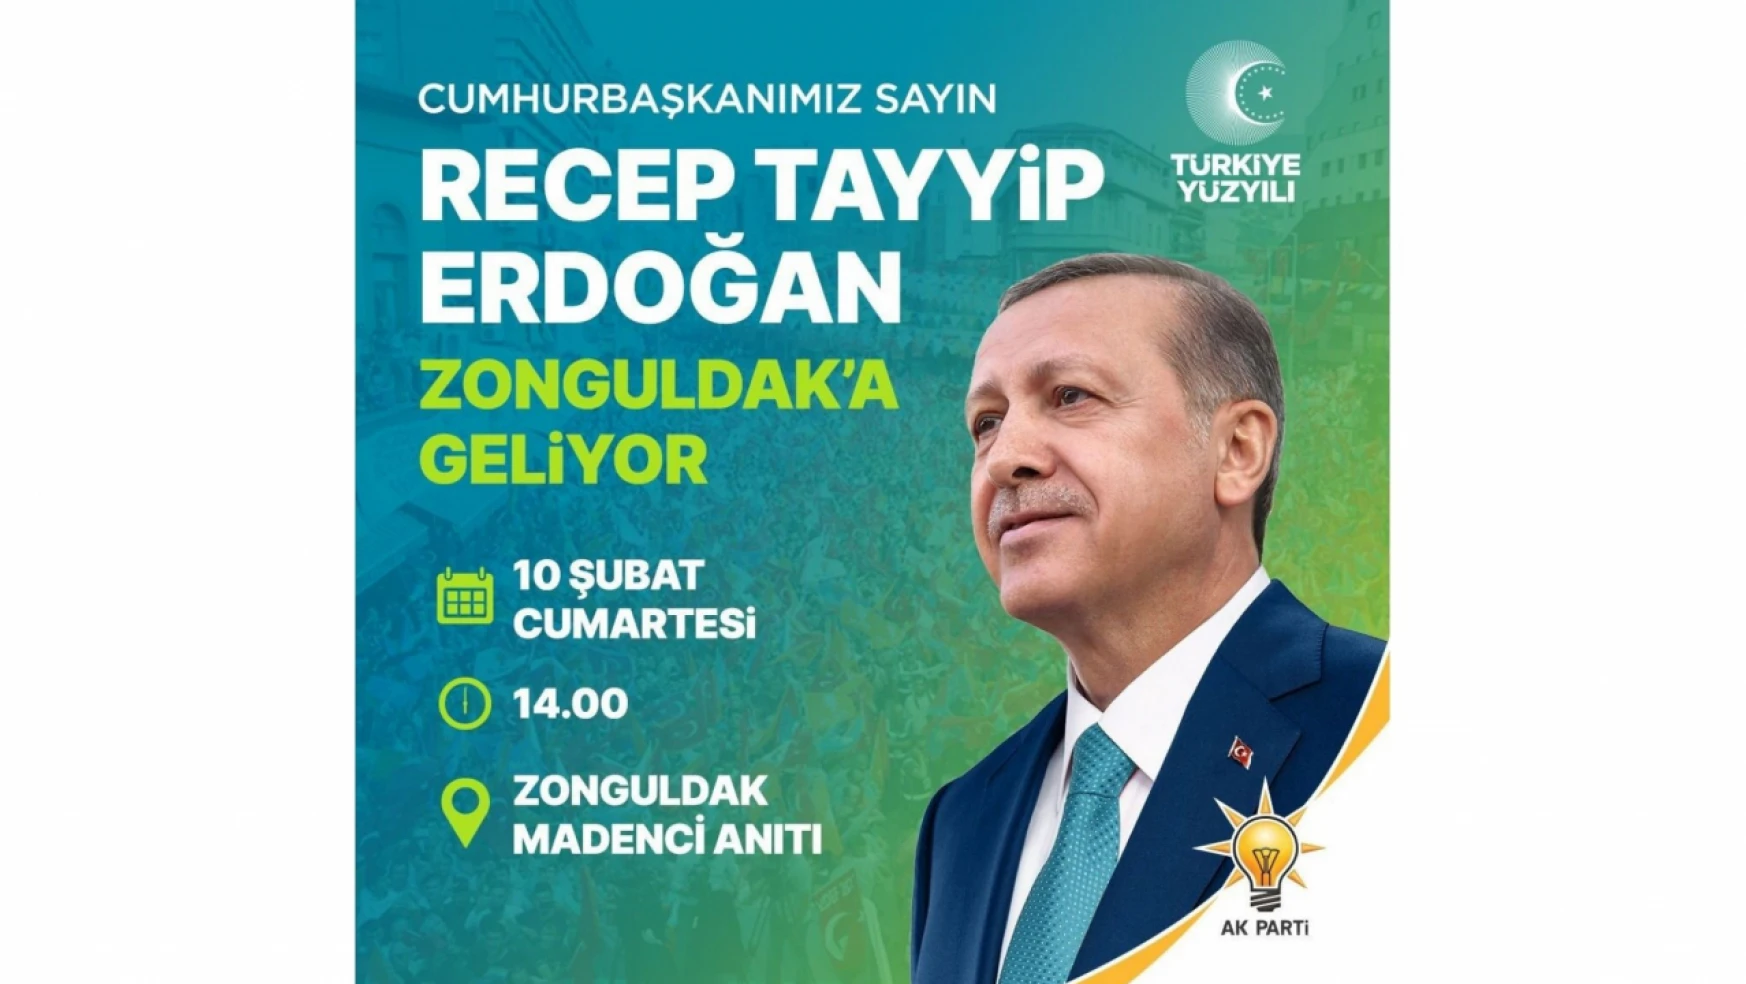 Zonguldak Cumhurbaşkanı Erdoğan'ı Ağırlayacak